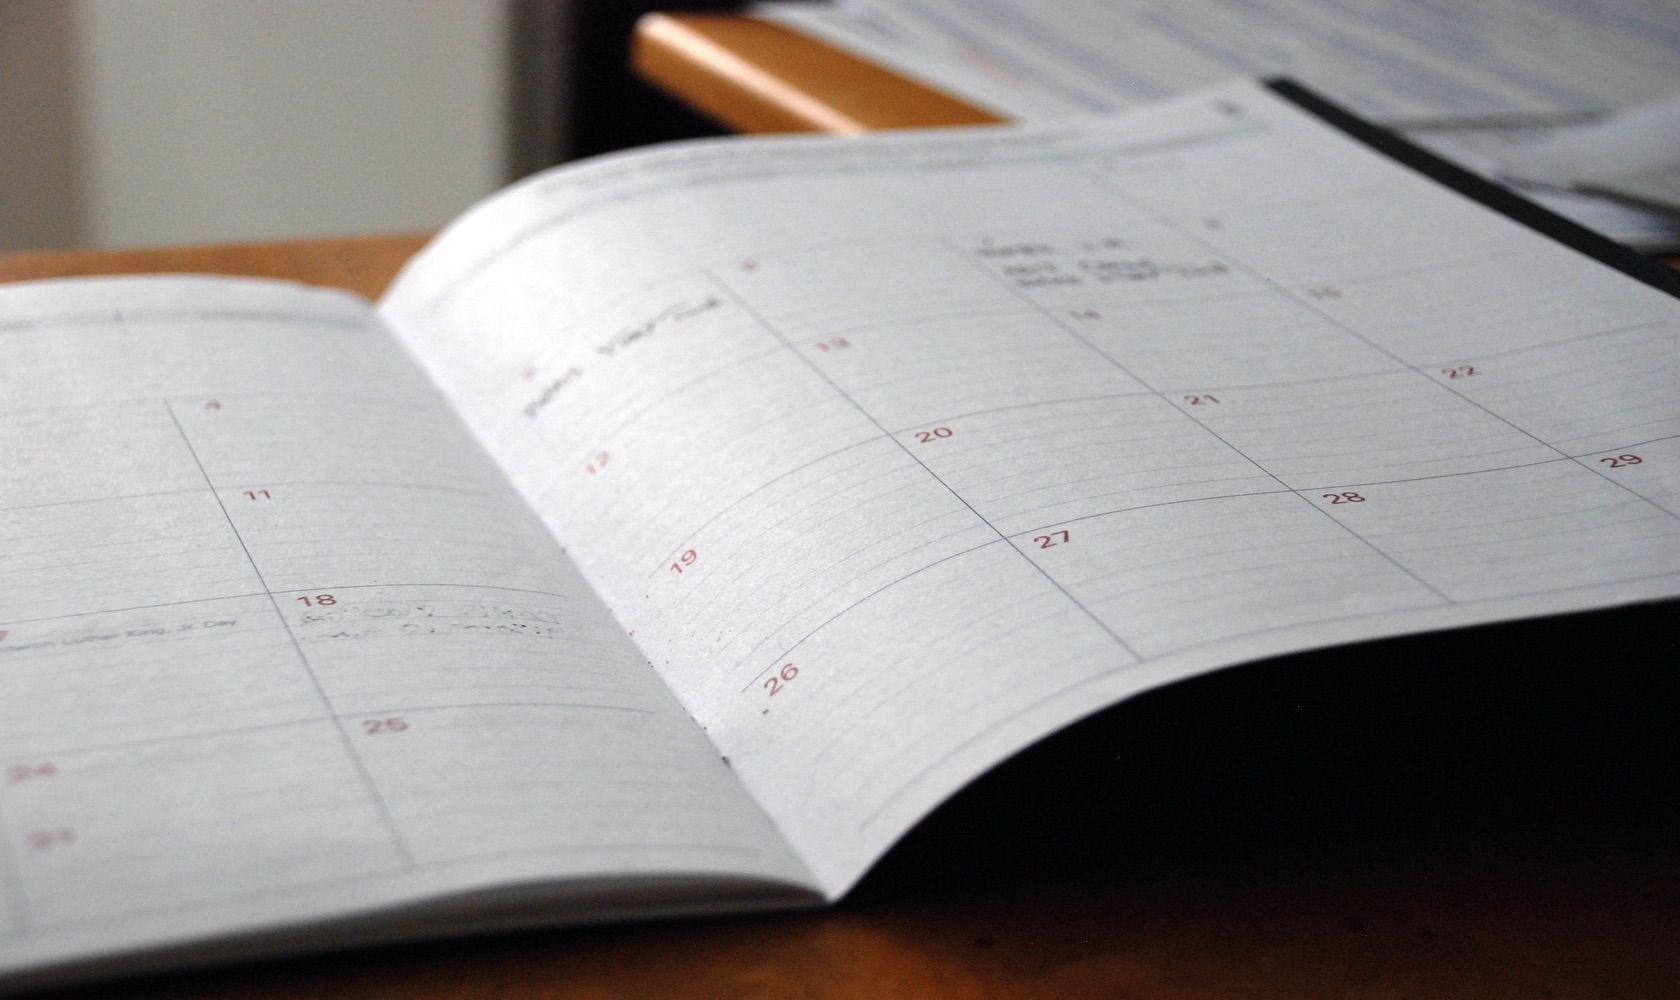 Schedule book - 7 modi in cui l’Assistente Google può aiutarti a pianificare la tua giornata